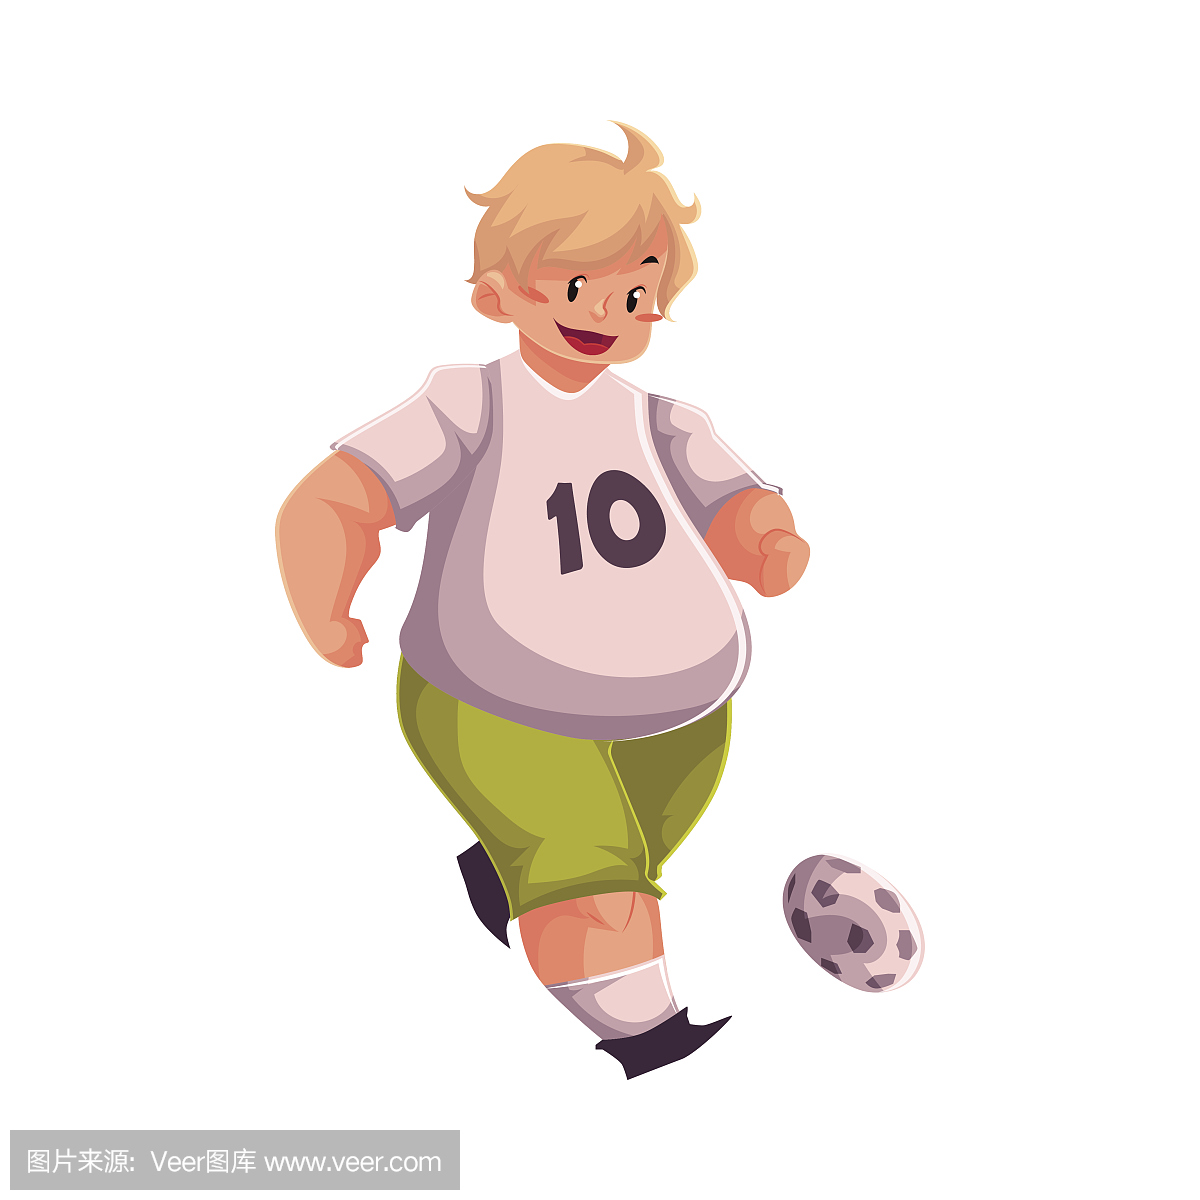 肥胖的男孩踢足球,适应,积极的生活方式